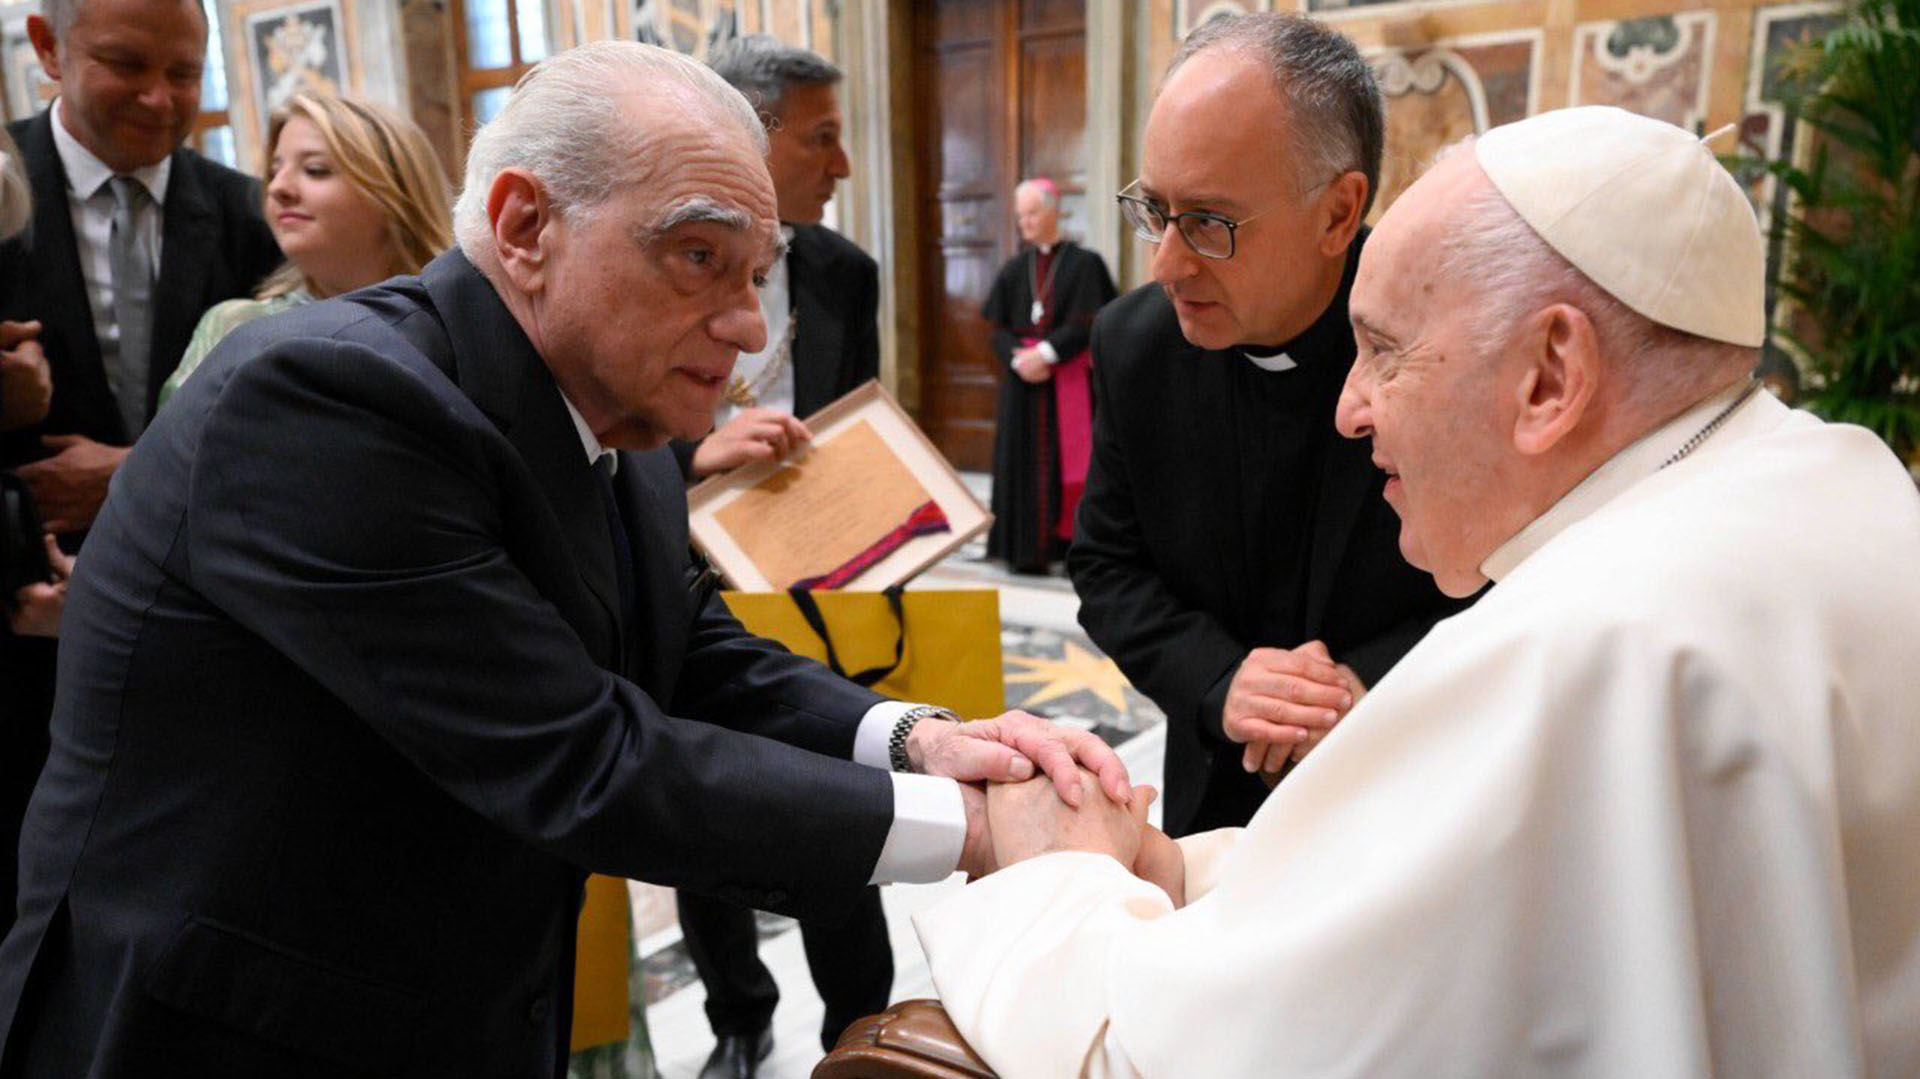 Martín Scorsese prepara nueva película inspirada en Jesús tras visitar al Papa en el Vaticano